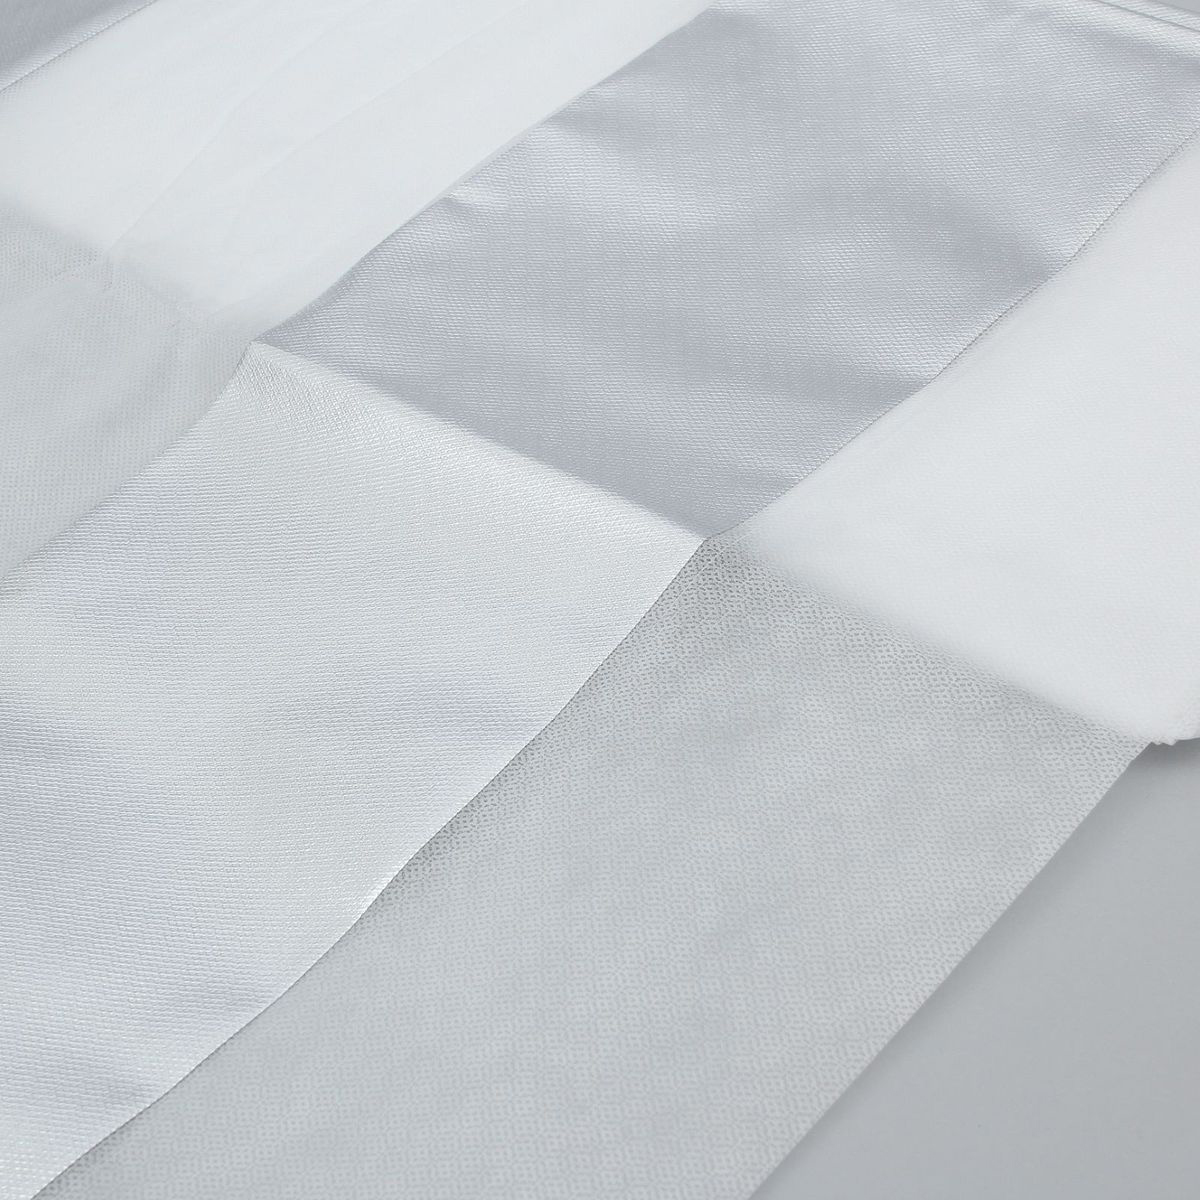 фото Материал укрывной Агротекс "Двойное тепло", фольгированный, цвет: серебристый, белый, 5 х 1,6 м